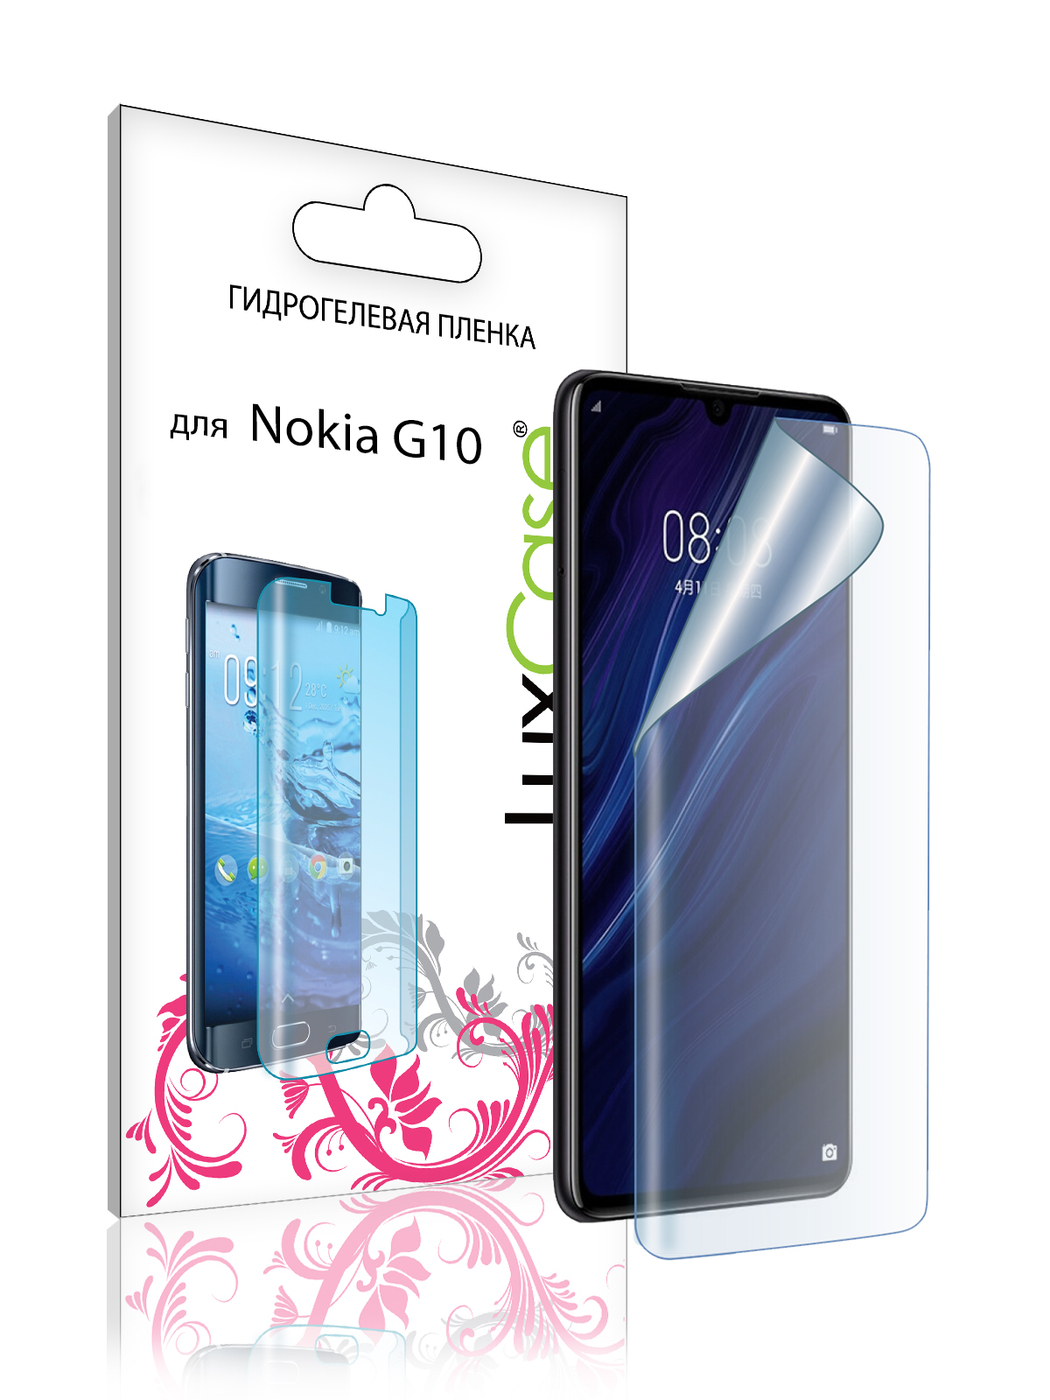 Пленка гидрогелевая LuxCase для Nokia G20 Front Transparent 86392 гидрогелевая пленка luxcase для nokia g20 front transparent 86392